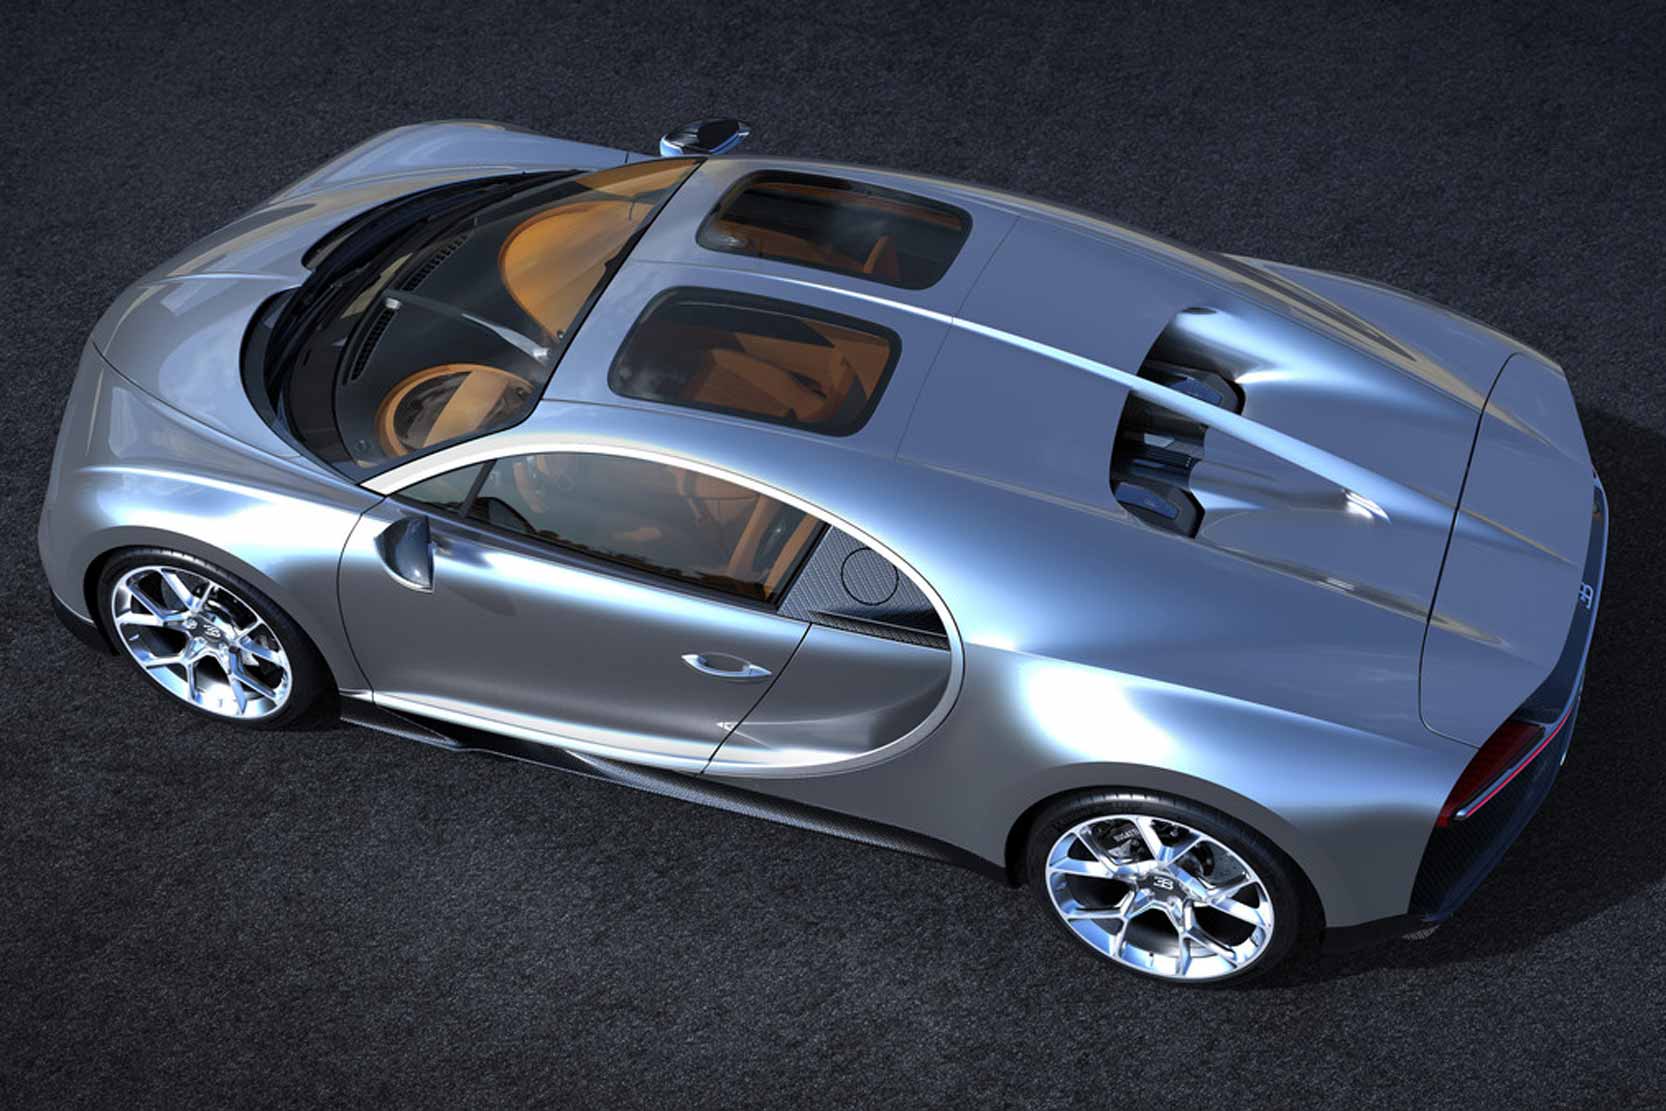 Image principale de l'actu: Bugatti chiron sky view la tete dans les etoiles 